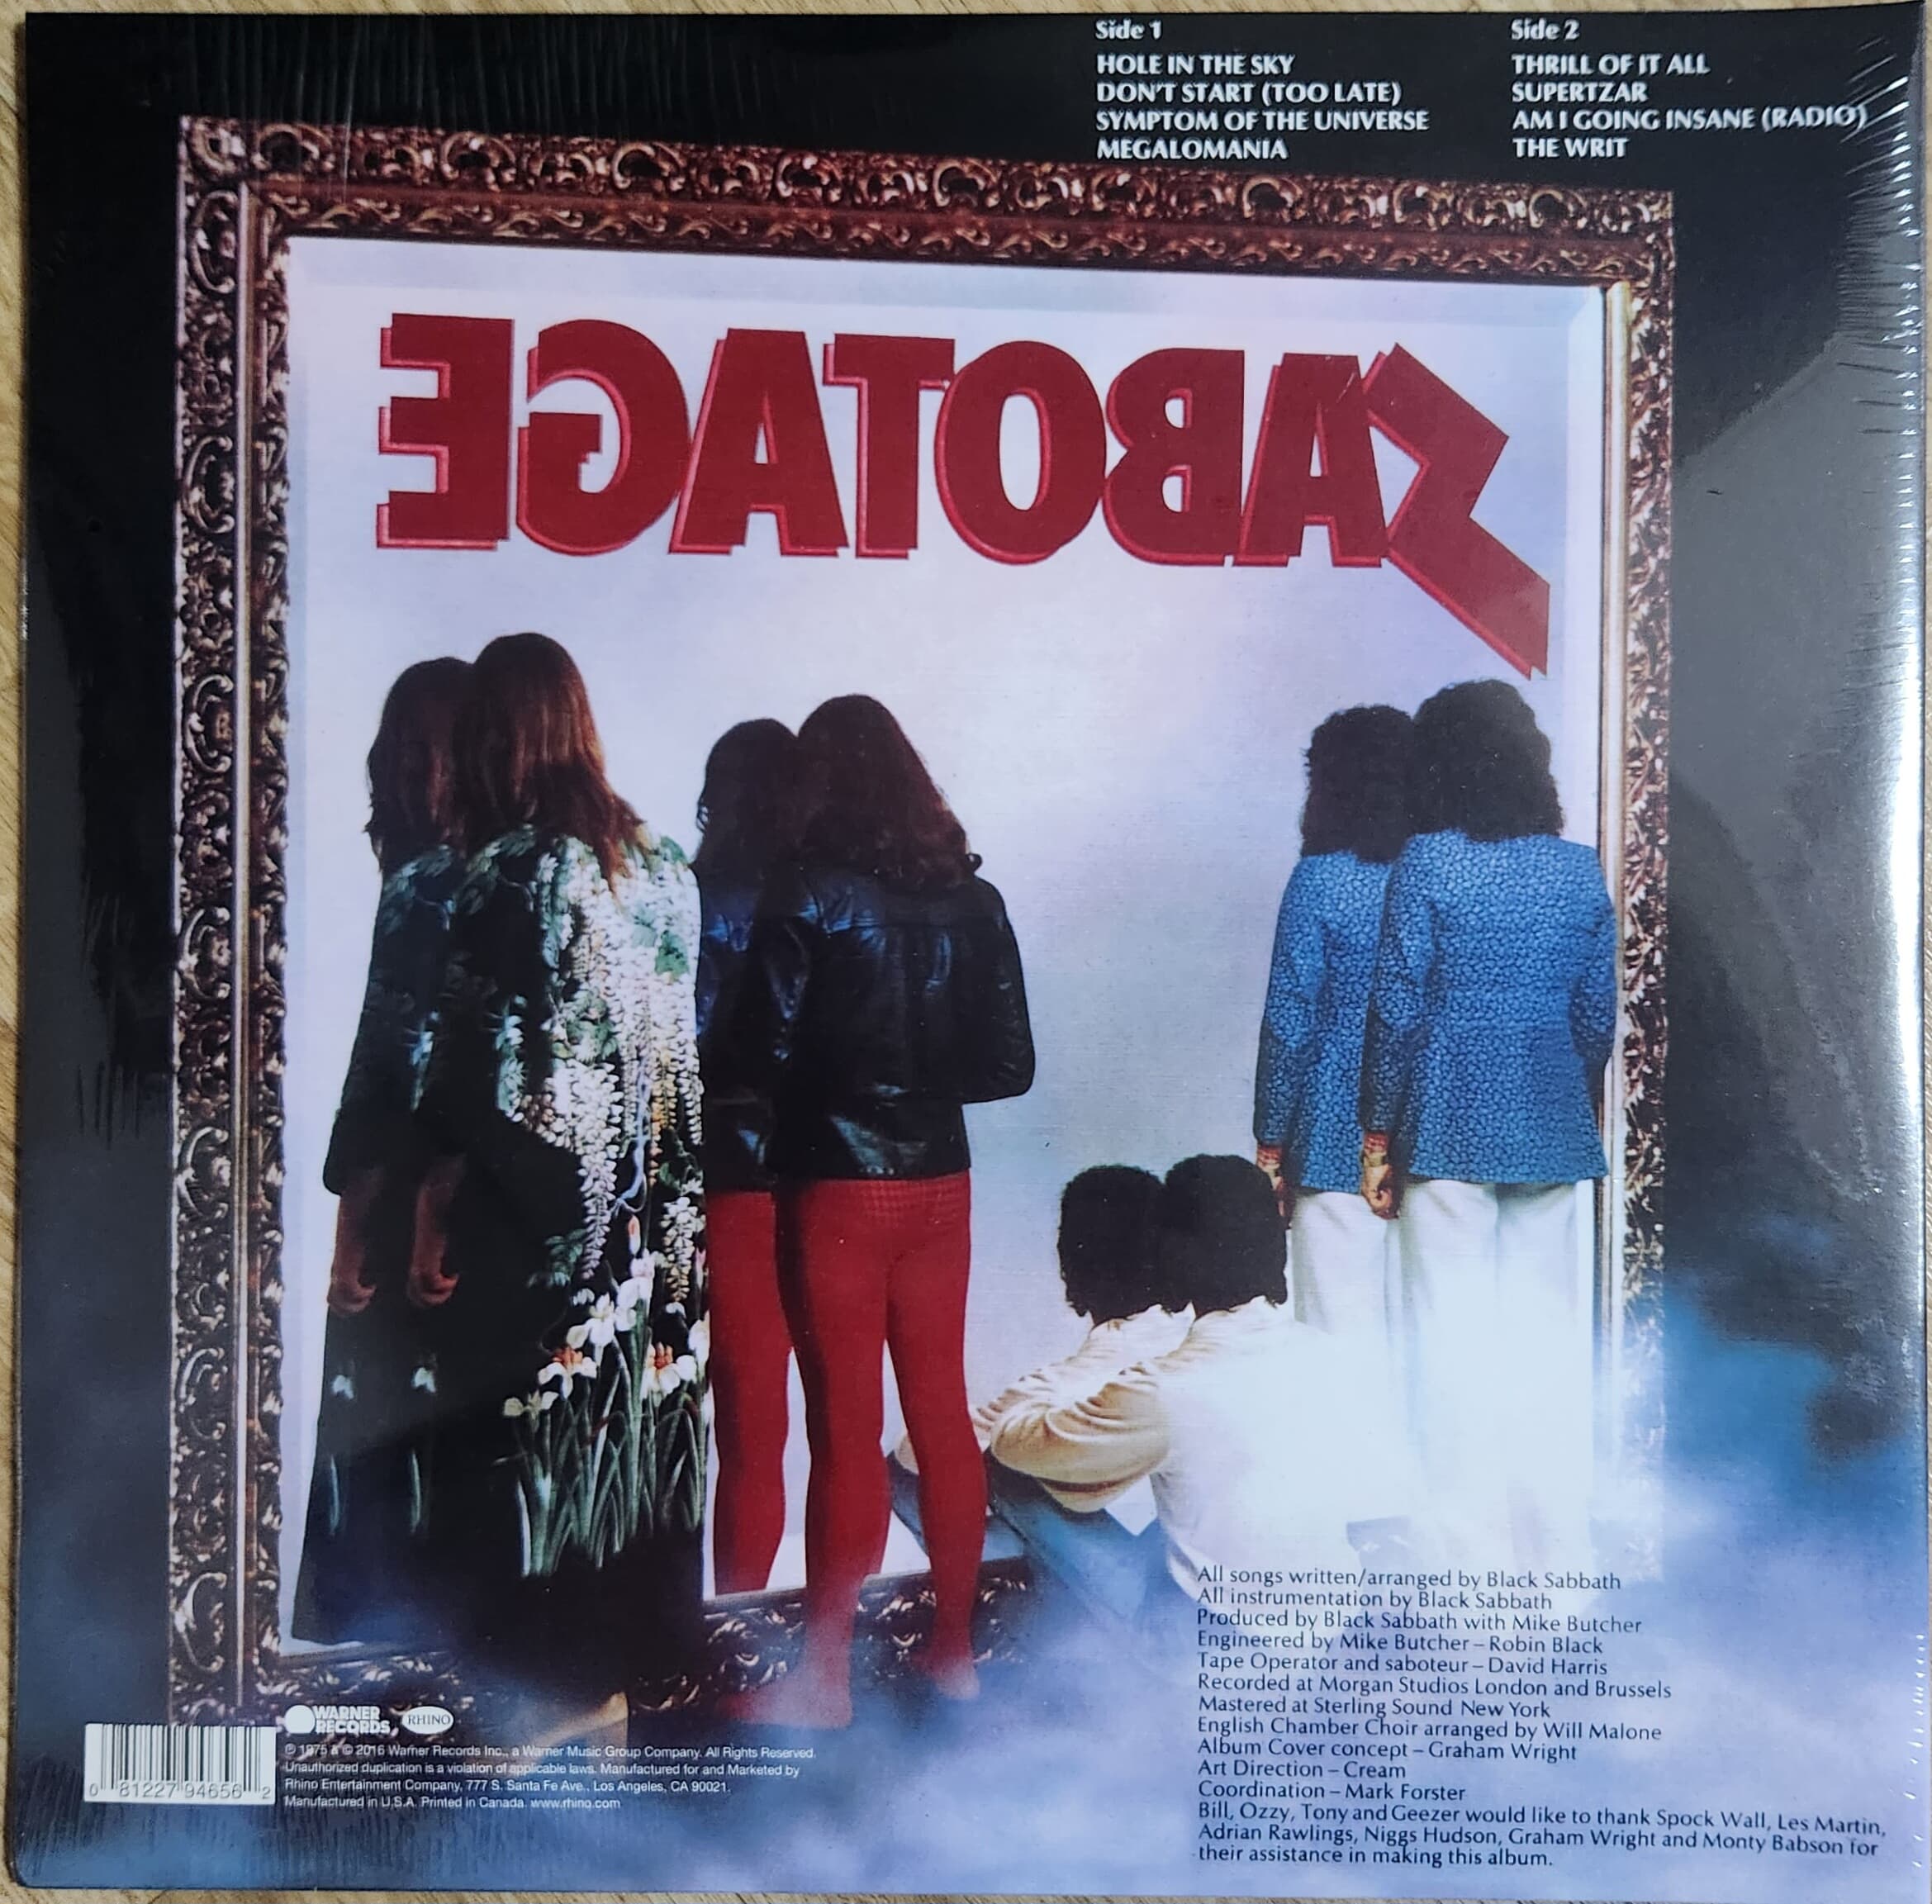 Black Sabbath - Sabotage [180g] --LP